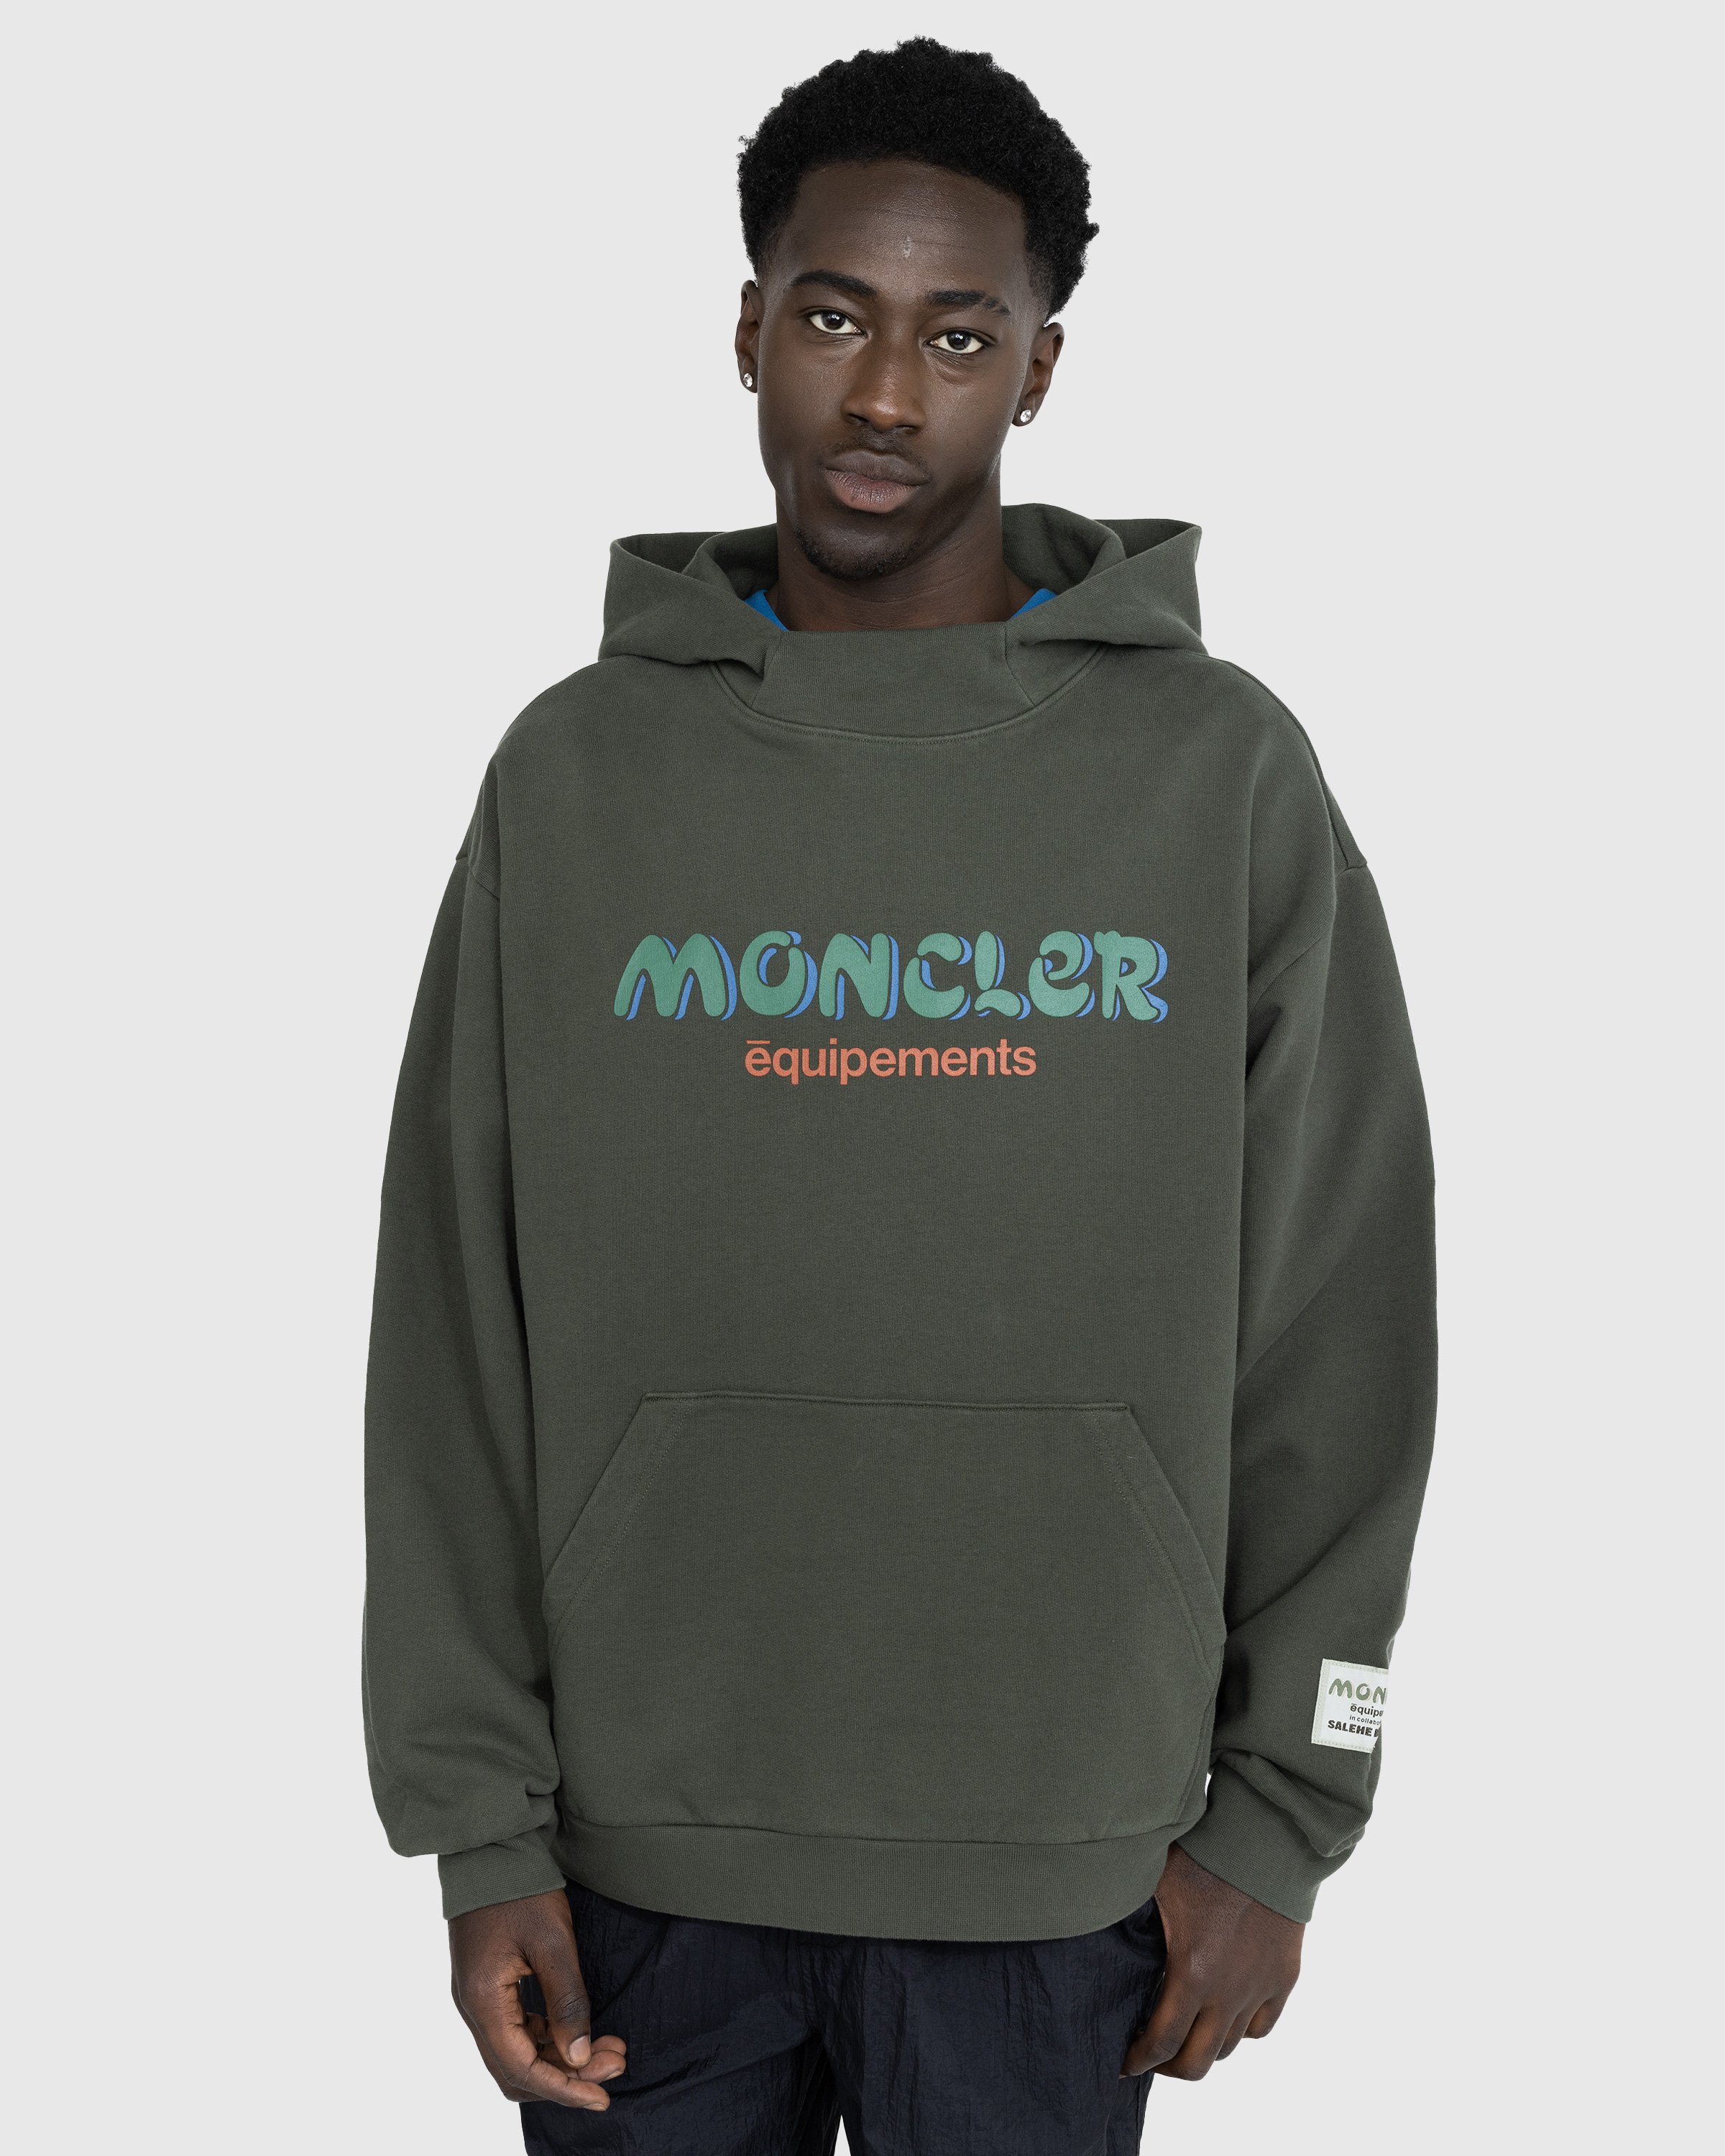 Moncler x Salehe Bembury - Logo Hoodie Green - Clothing - Green - Image 2